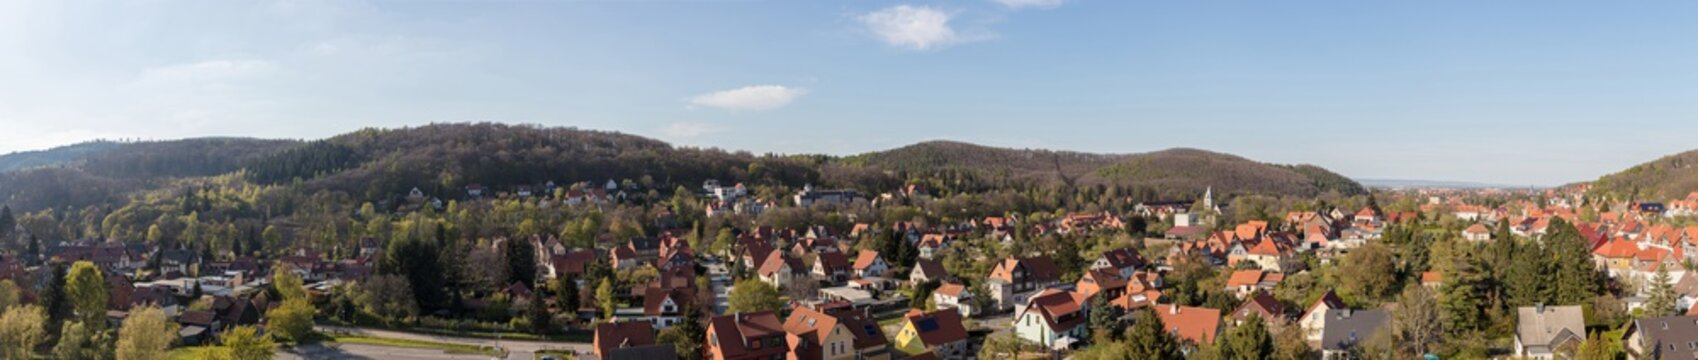 Panorama der Stadt Wernigerode im Harz Gebirge